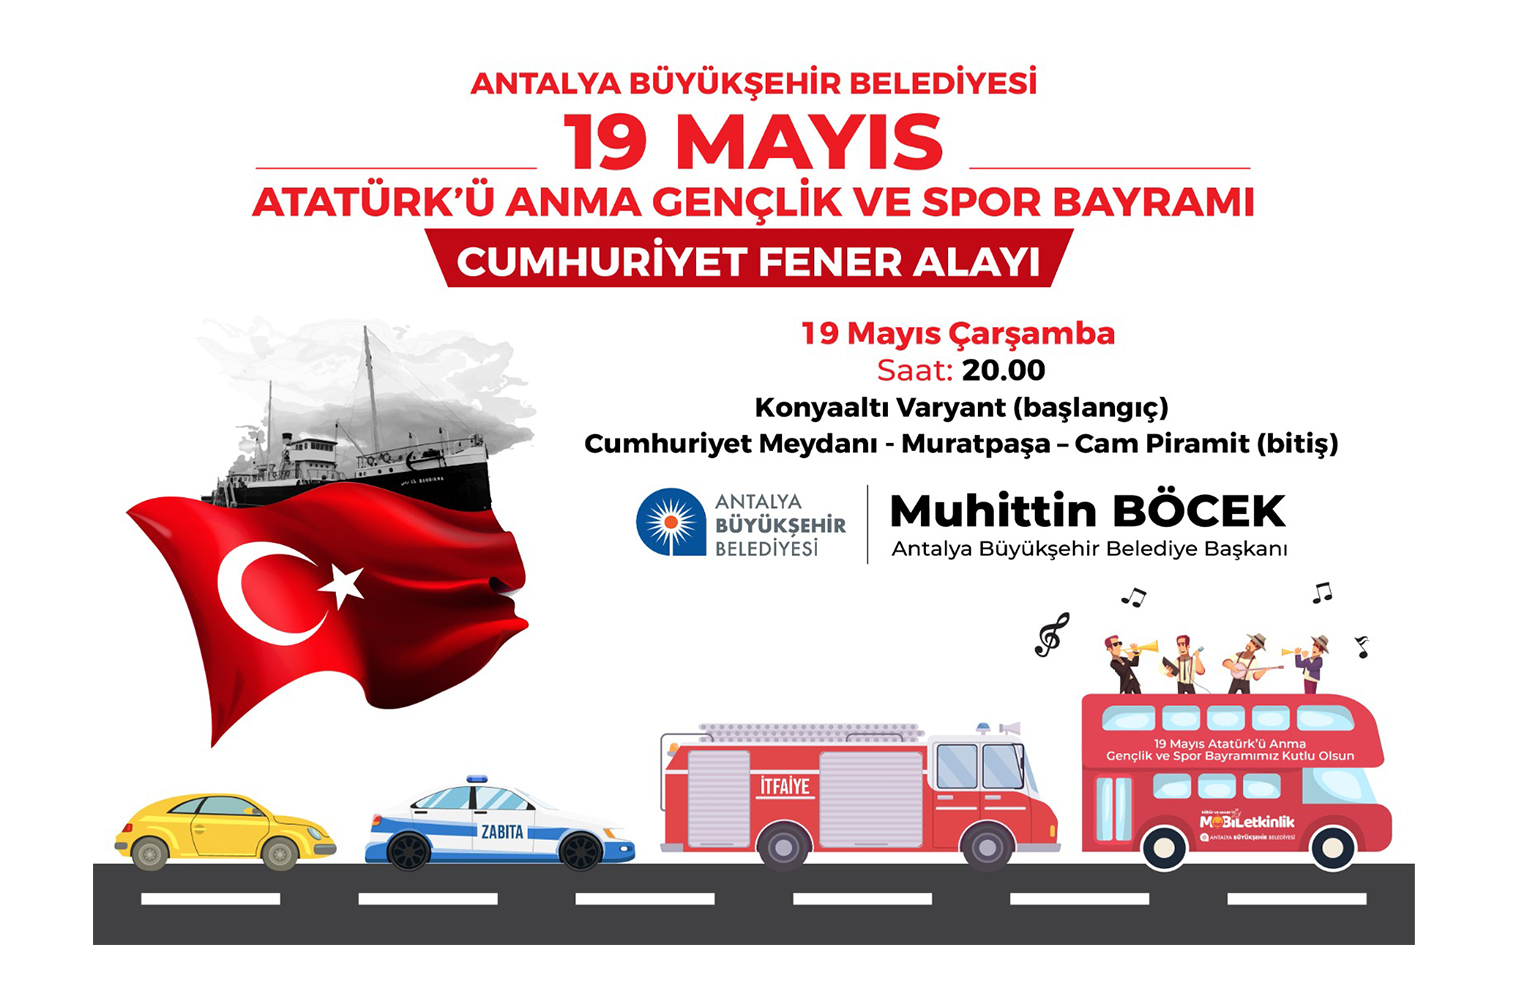  Antalya’da 19 Mayısa Özel Fener Alayı Düzenleniyor